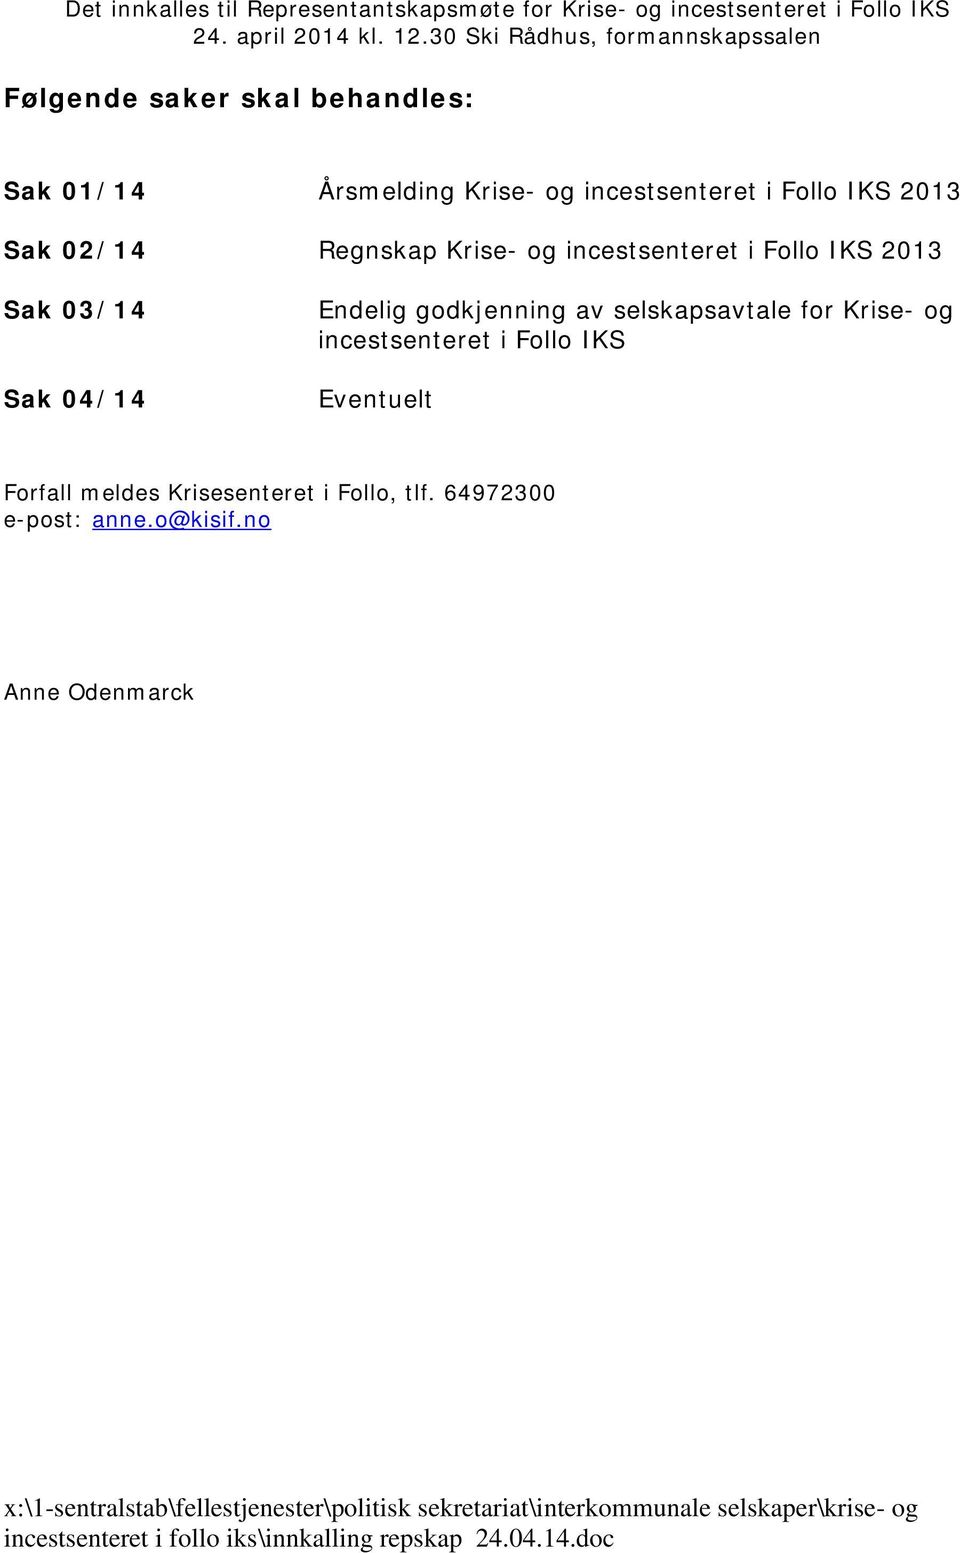 incestsenteret i Follo IKS 2013 Sak 03/14 Sak 04/14 Endelig godkjenning av selskapsavtale for Krise- og incestsenteret i Follo IKS Eventuelt Forfall meldes